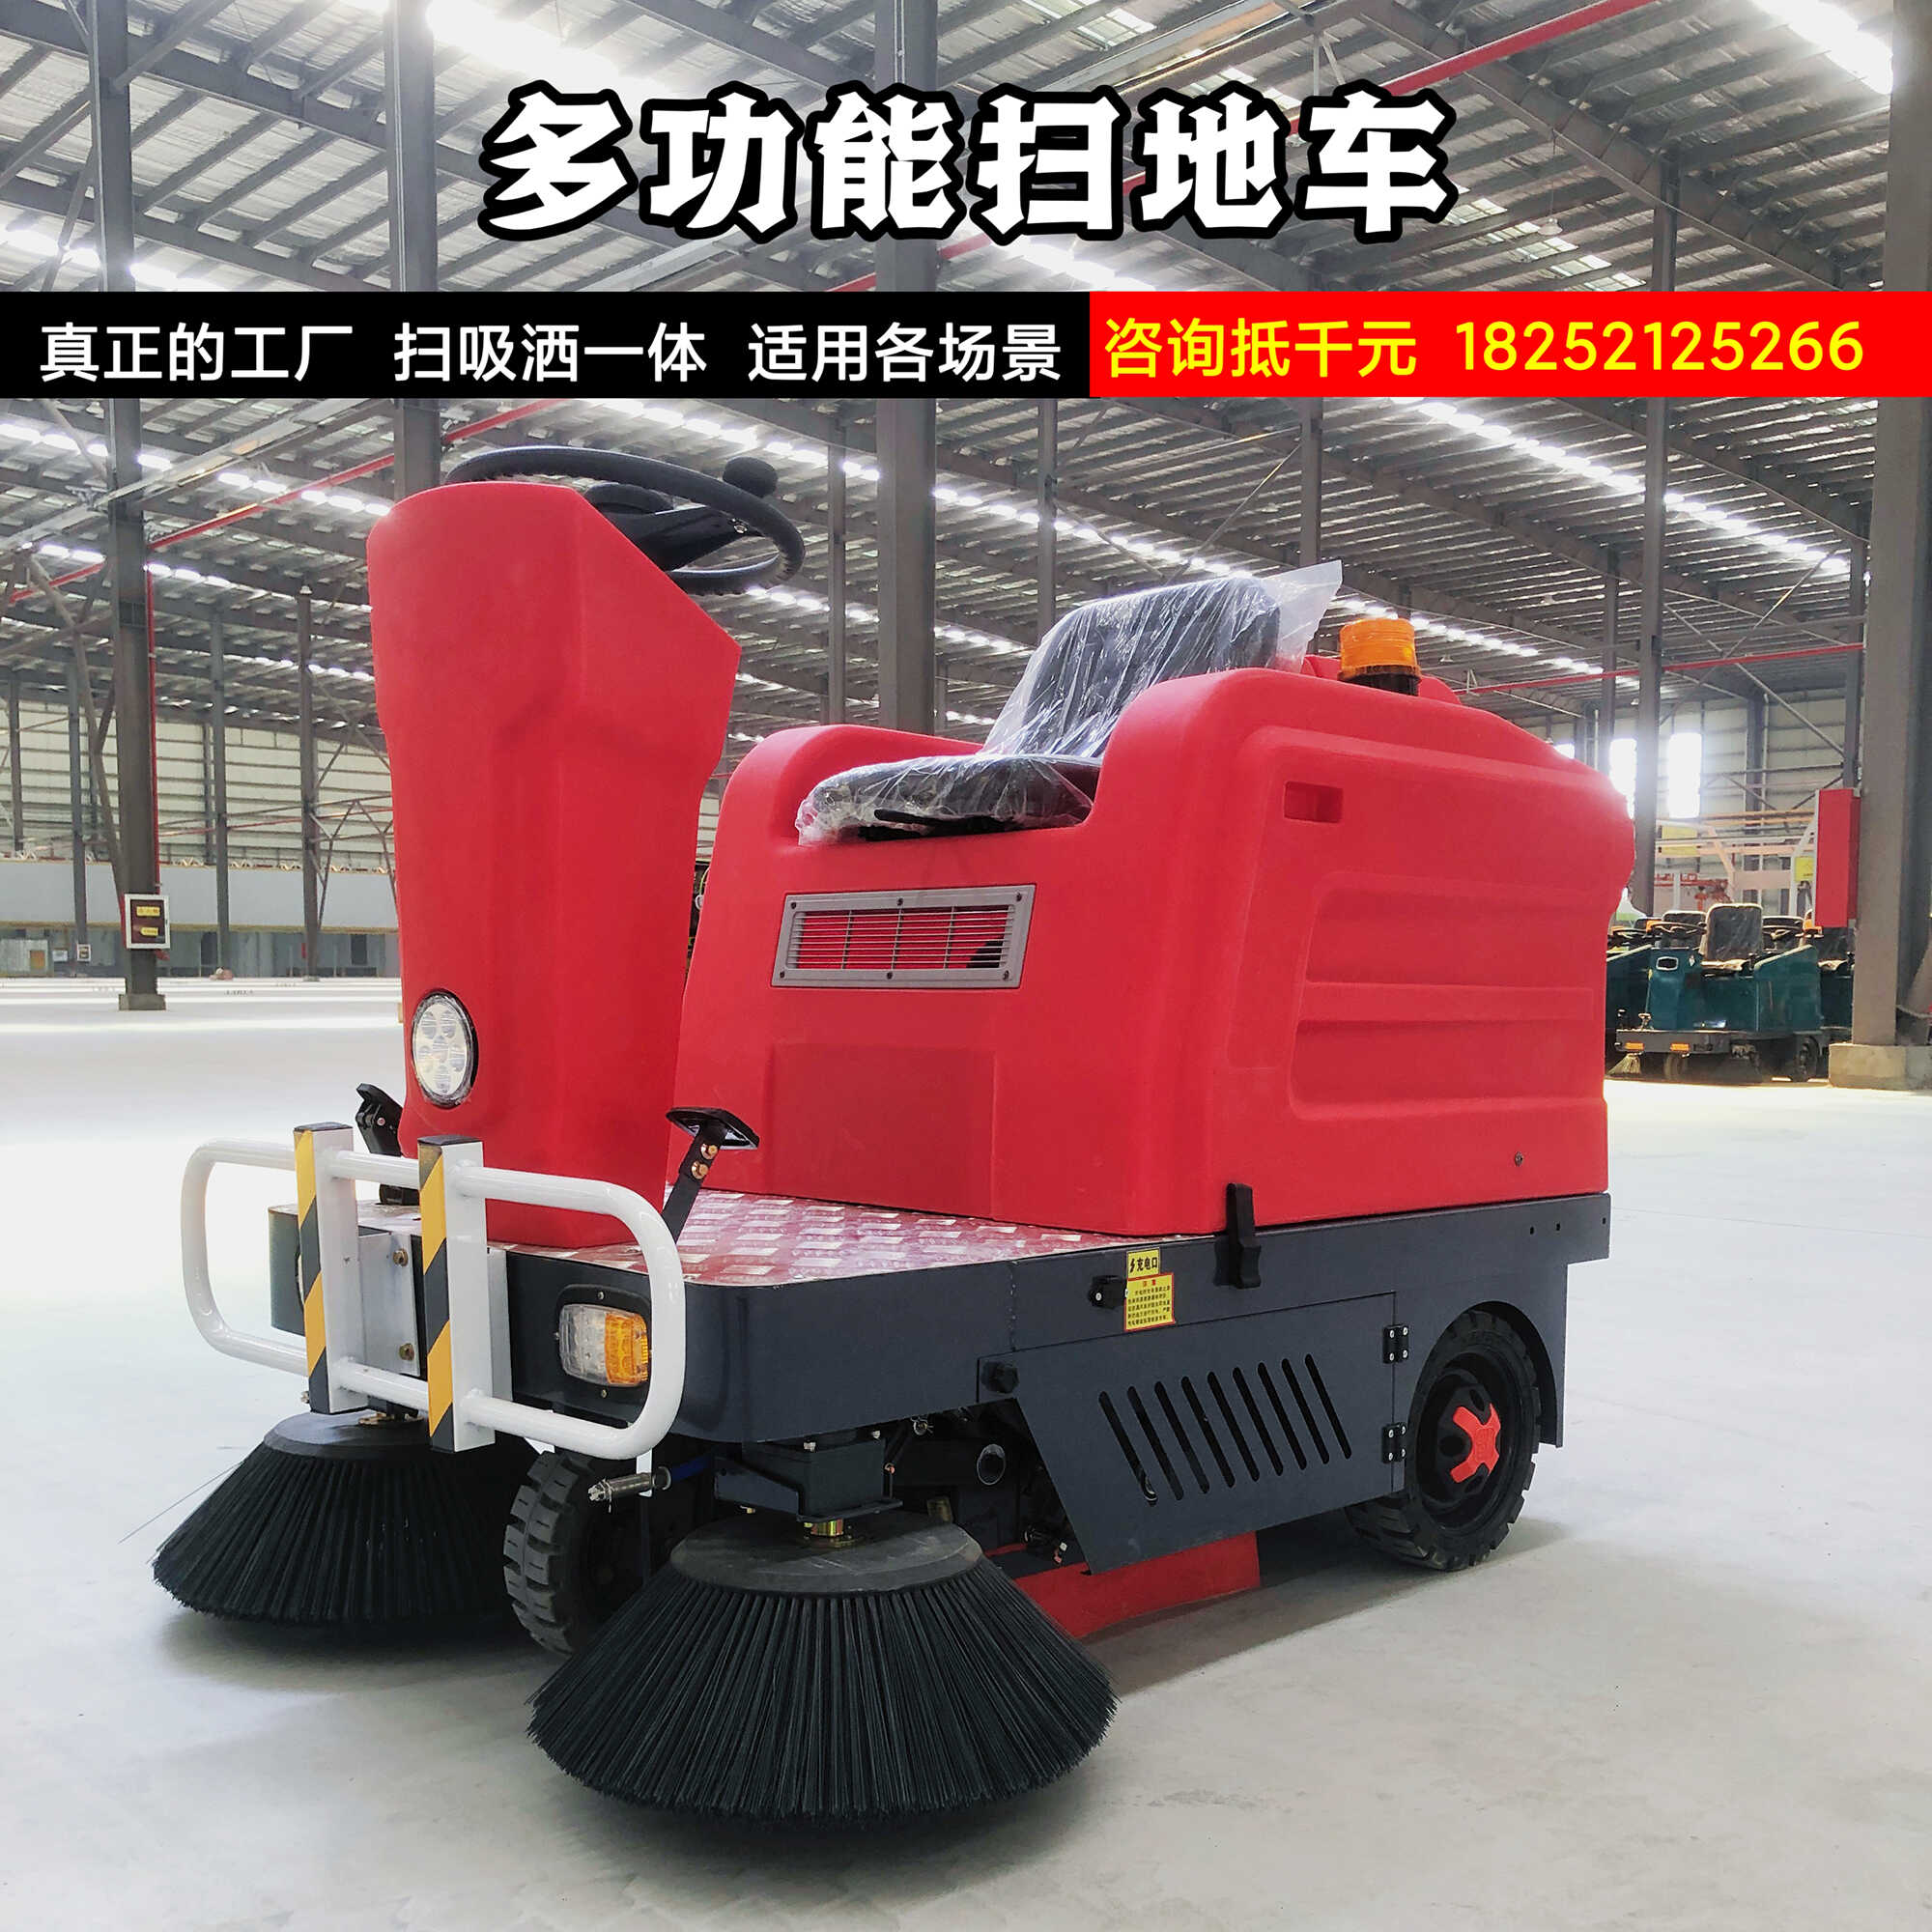 驾驶式小型多功能电动扫地车清扫车工厂车间路面吸尘用工业扫地机